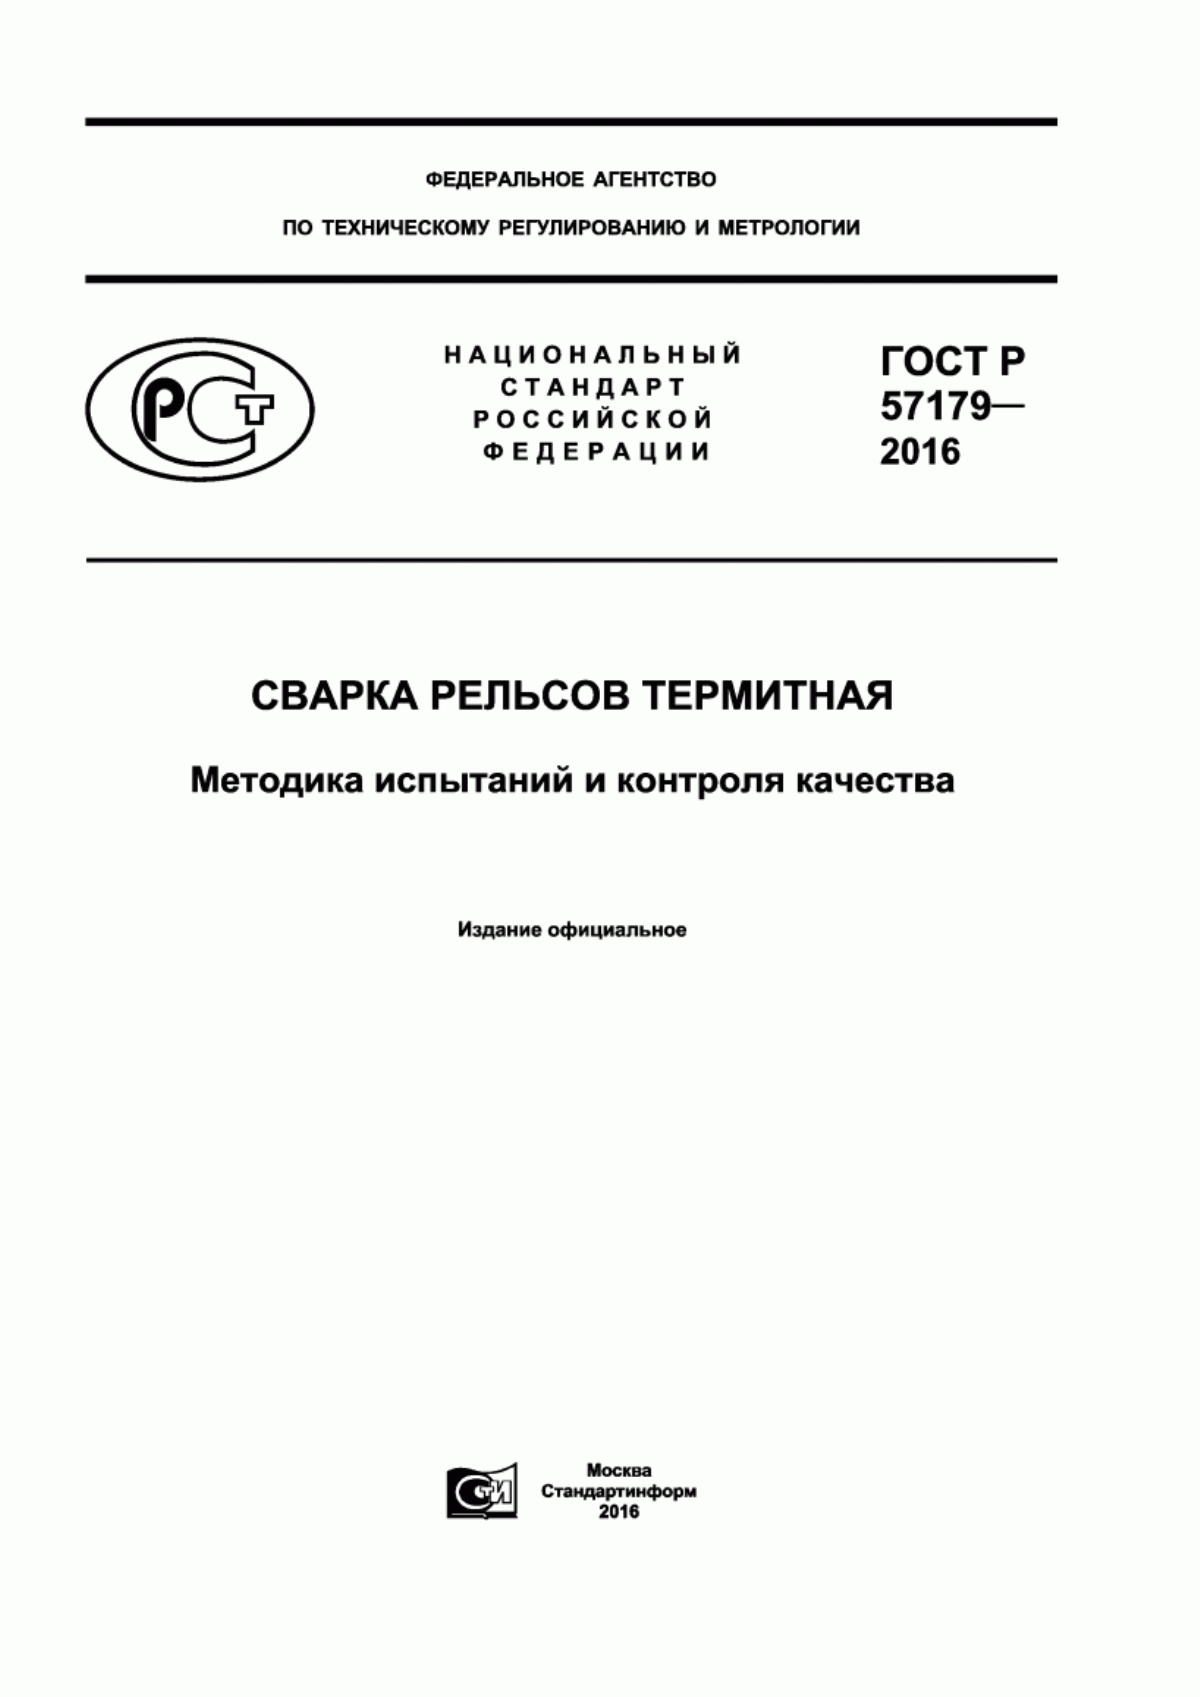 ГОСТ Р 57179-2016 Сварка рельсов термитная. Методика испытаний и контроля качества